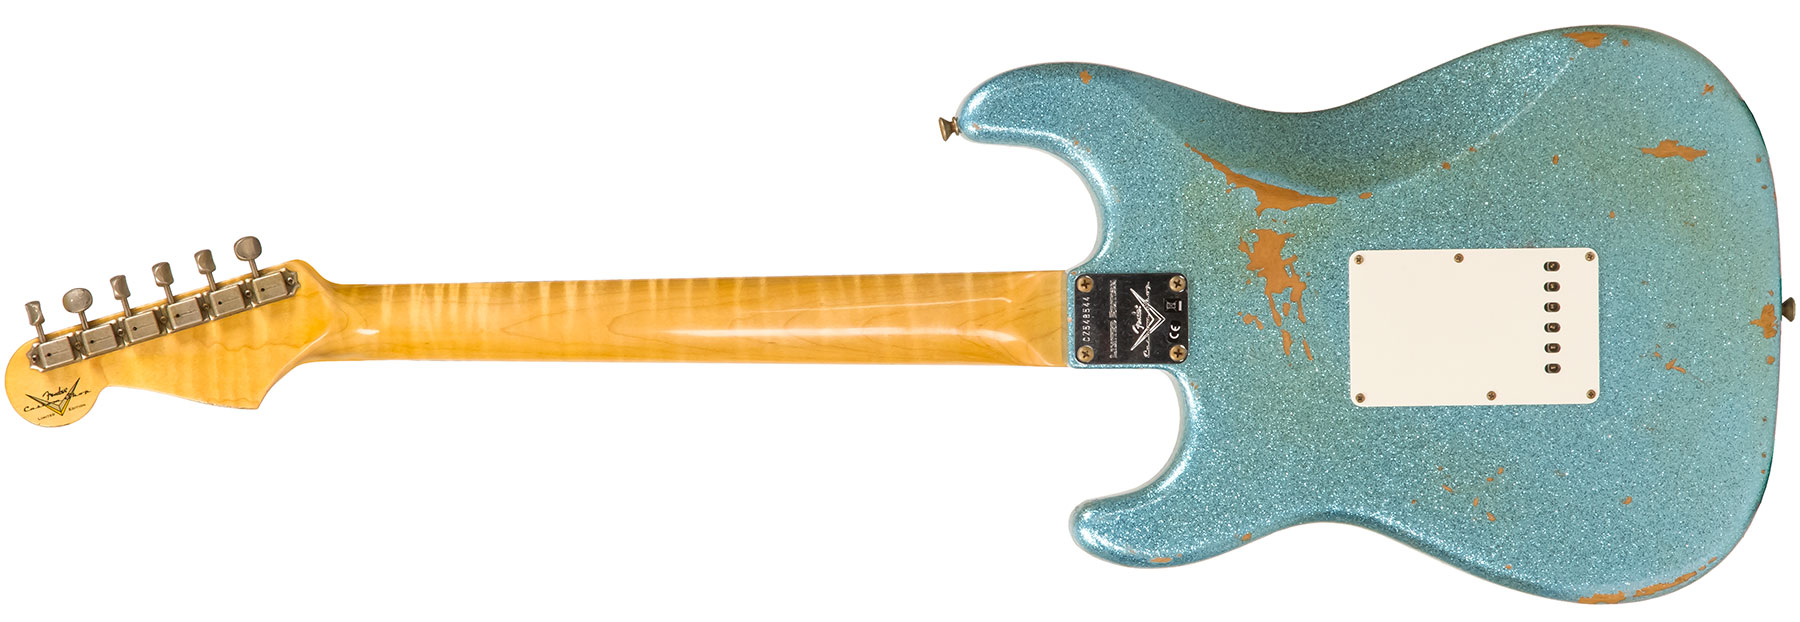 Fender Custom Shop Strat 1965 Ltd Usa Rw #cz548544 - Relic Daphne Blue Sparkle - Elektrische gitaar in Str-vorm - Variation 1